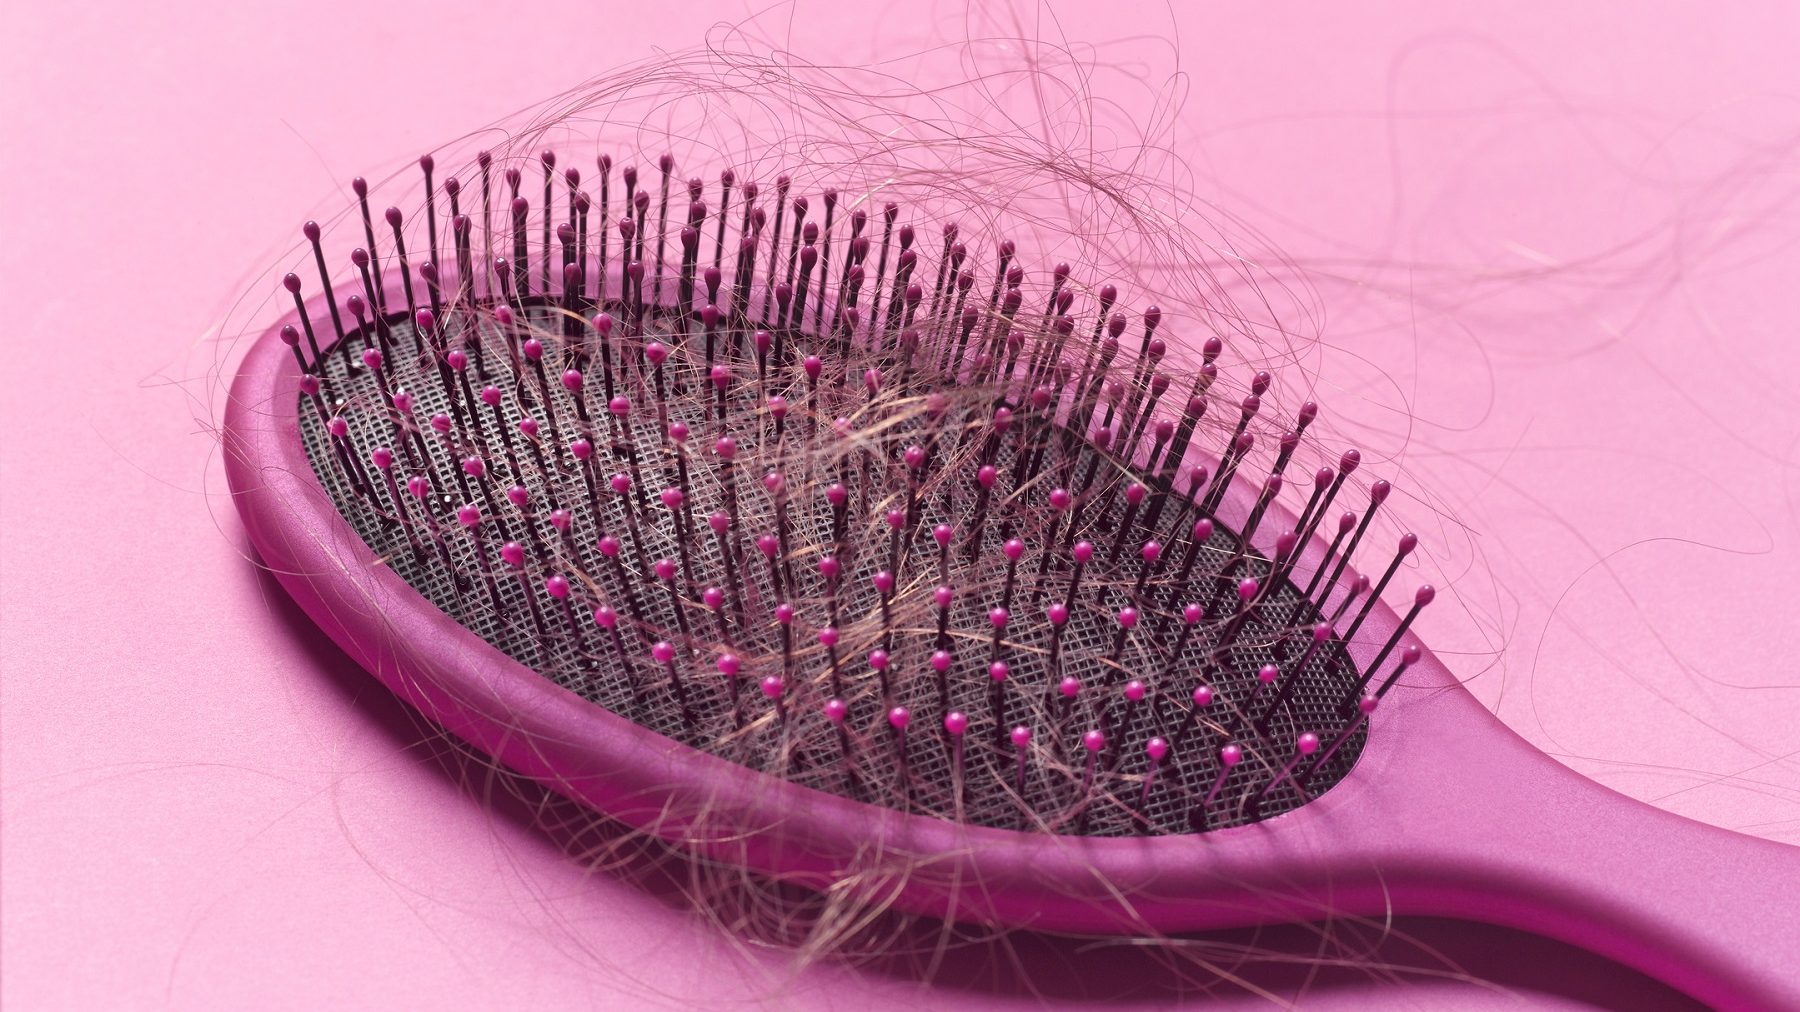 Cómo limpiar los cepillos del pelo - Blog de Arenal